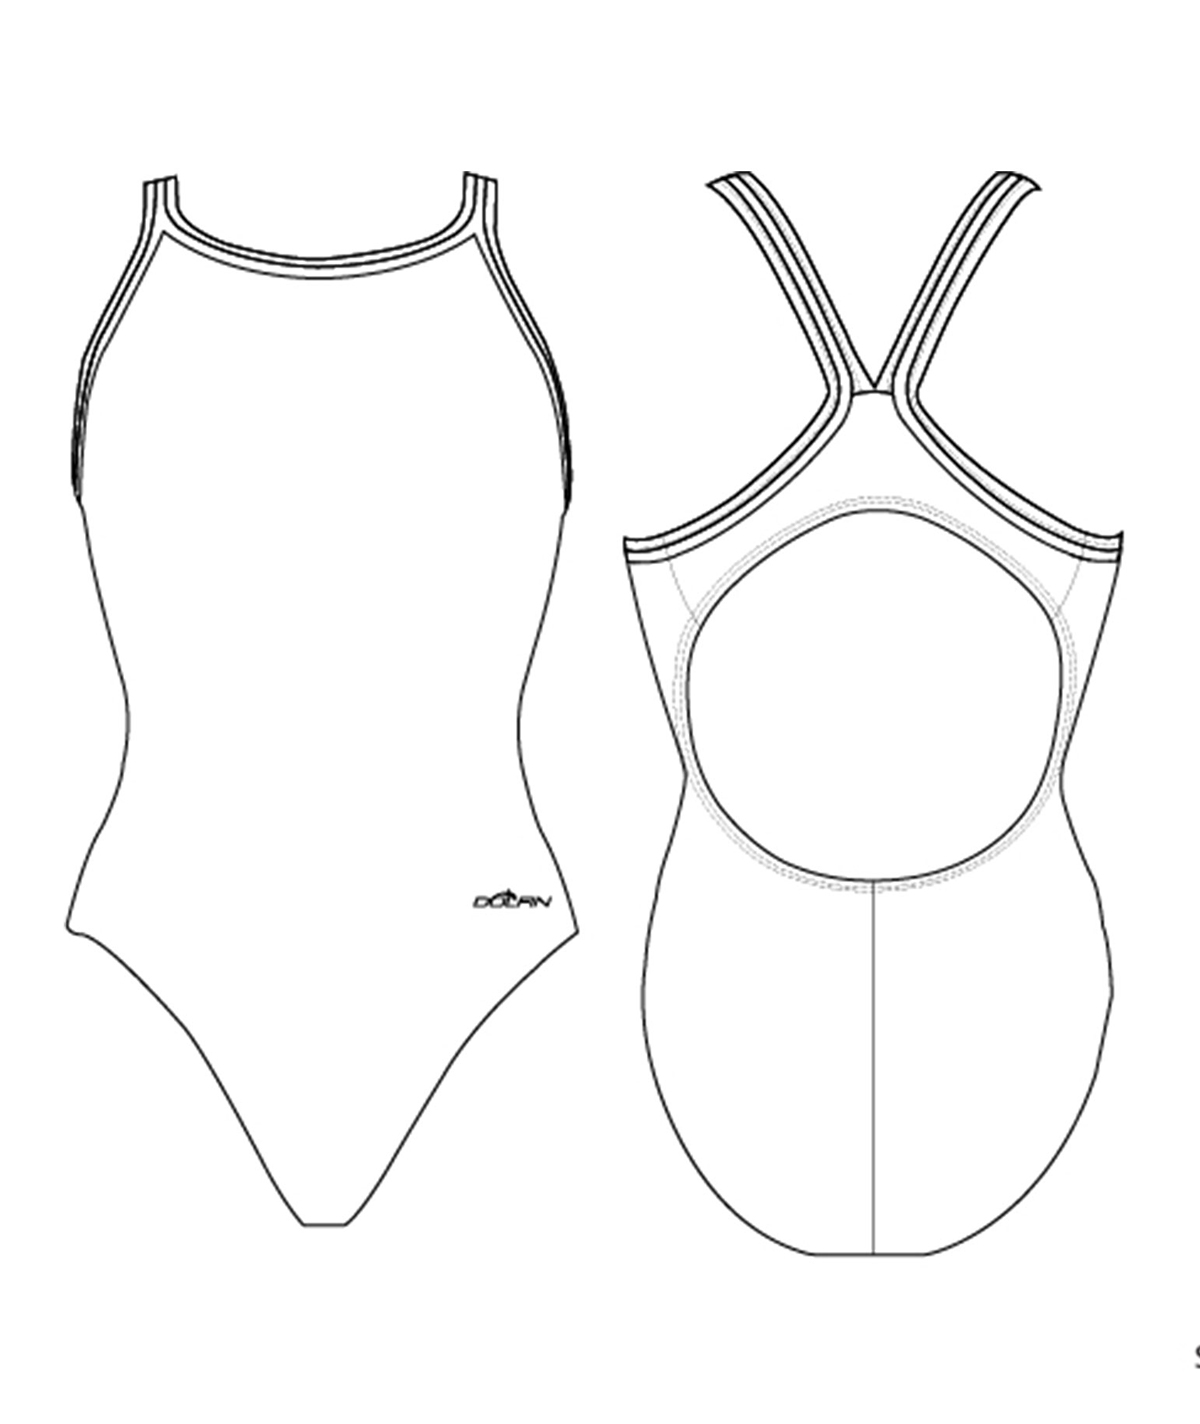 Women's Sublimated DBX Back 1 Piece Swimsuit